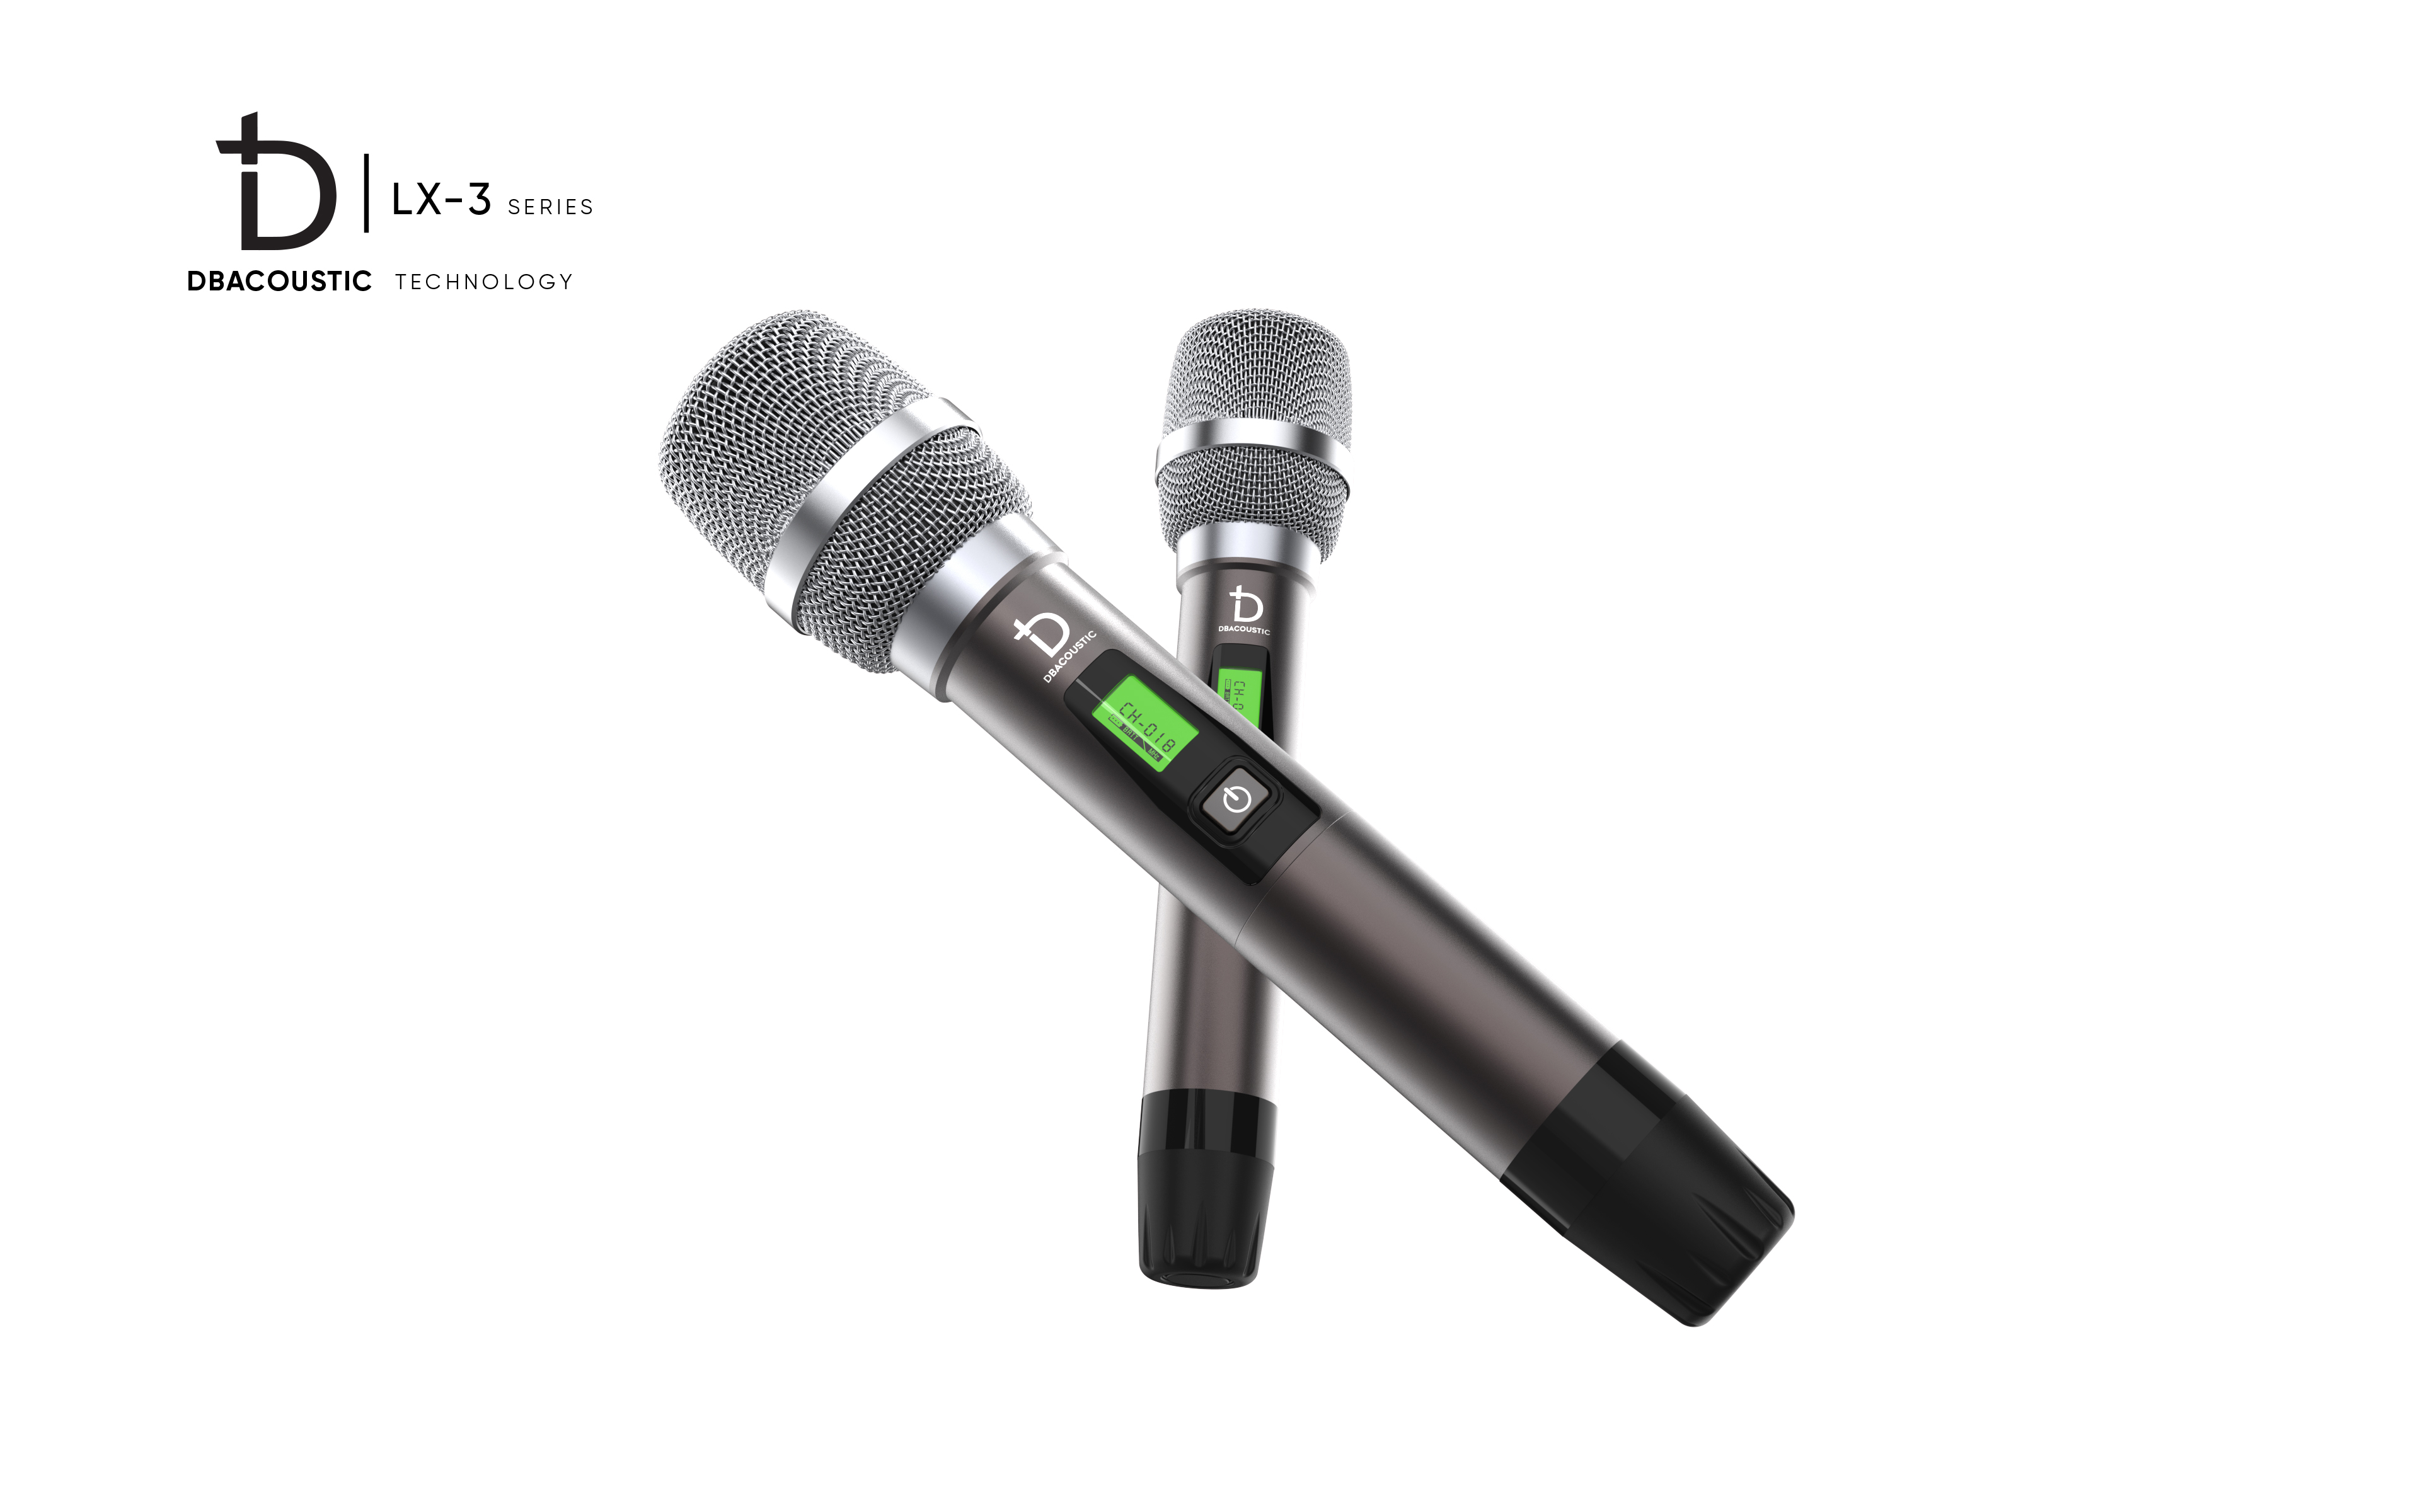 mic không day dBacoustic LX-M3, mic có khả năng thu sóng xa 40m, chống hú và hỗ trợ chức năng tự ngắt cùng cảm biến gia tốc, hàng chính hãng